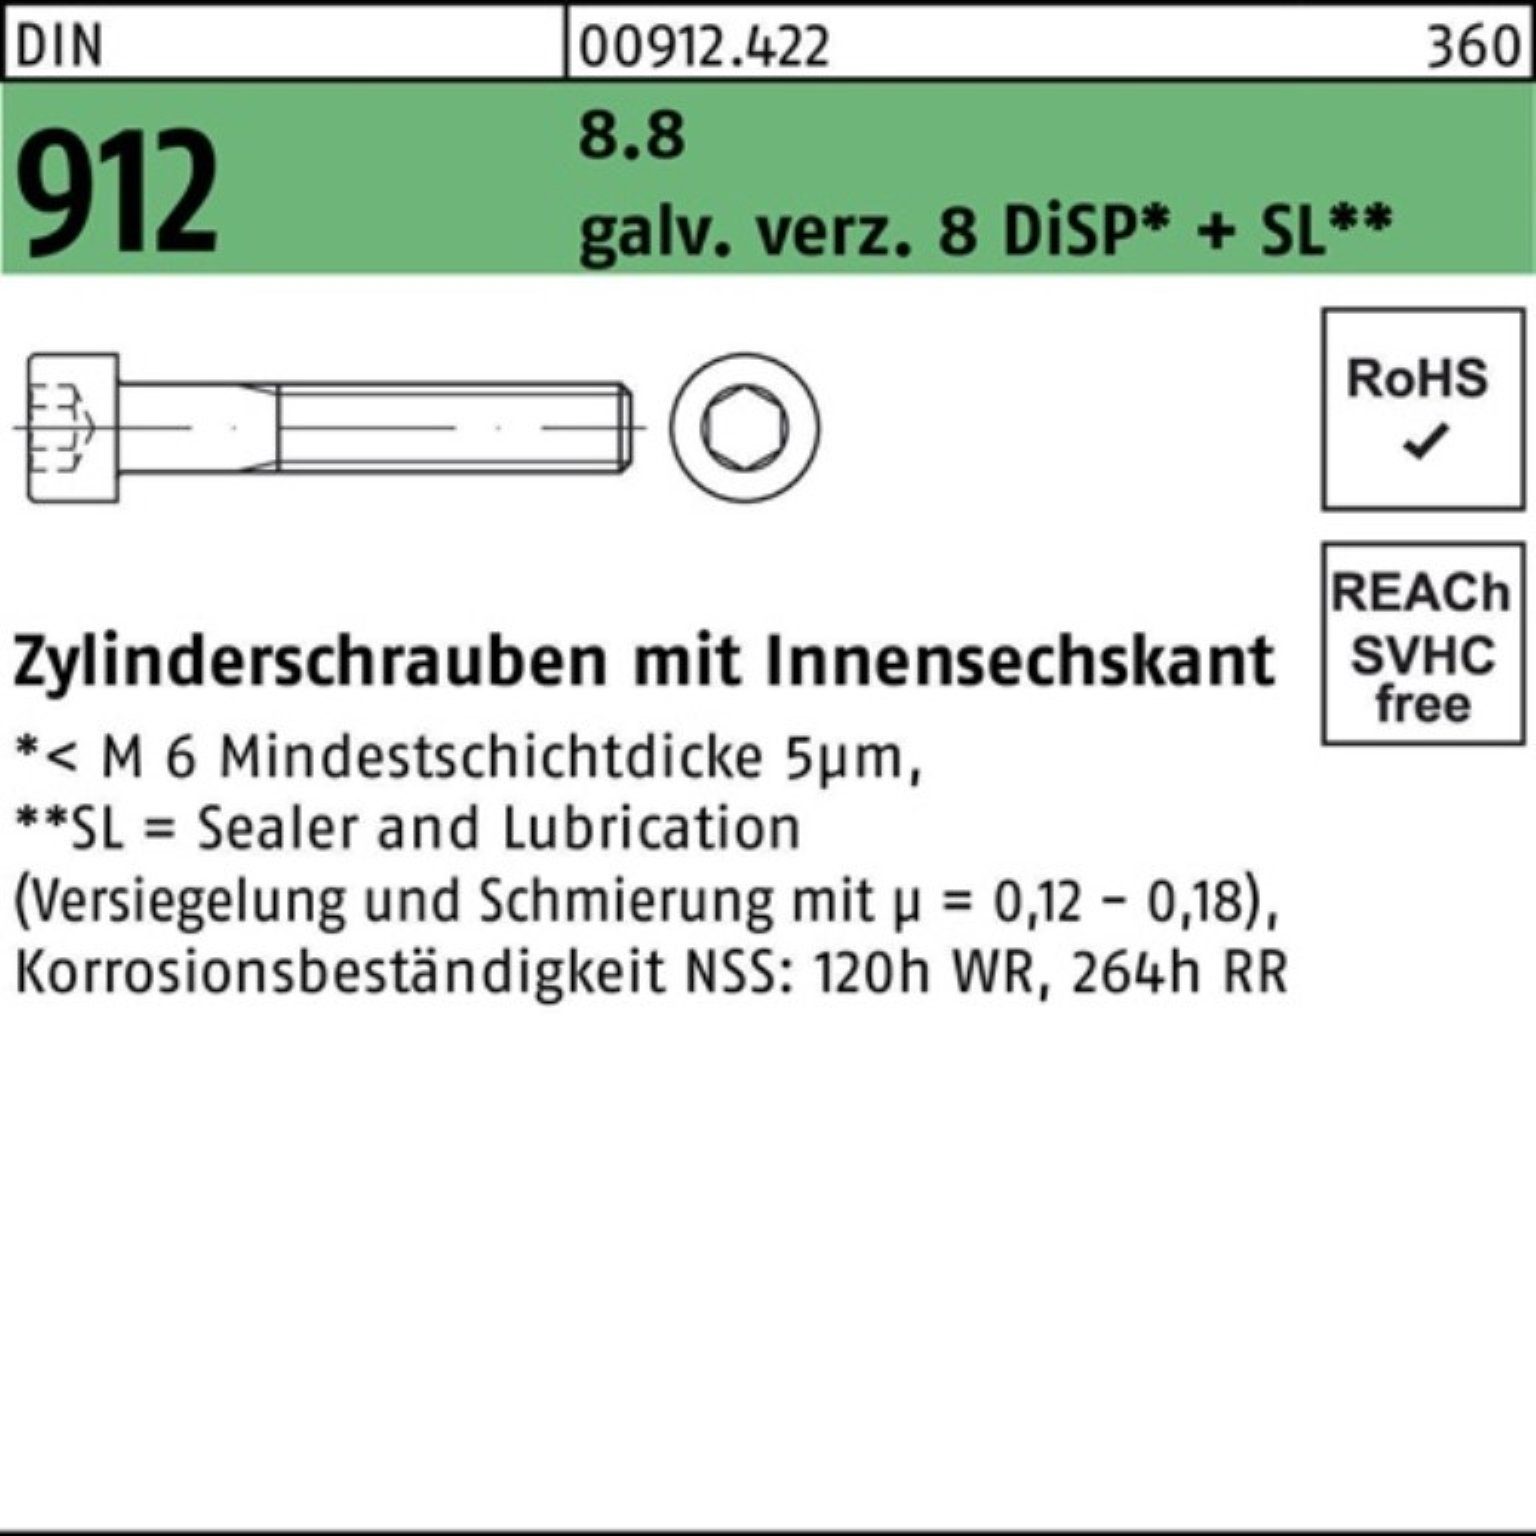 Zylinderschraube Zylinderschraube Reyher DIN Innen-6kt 912 DiS M20x Pack gal 8.8 Zn 8 55 100er